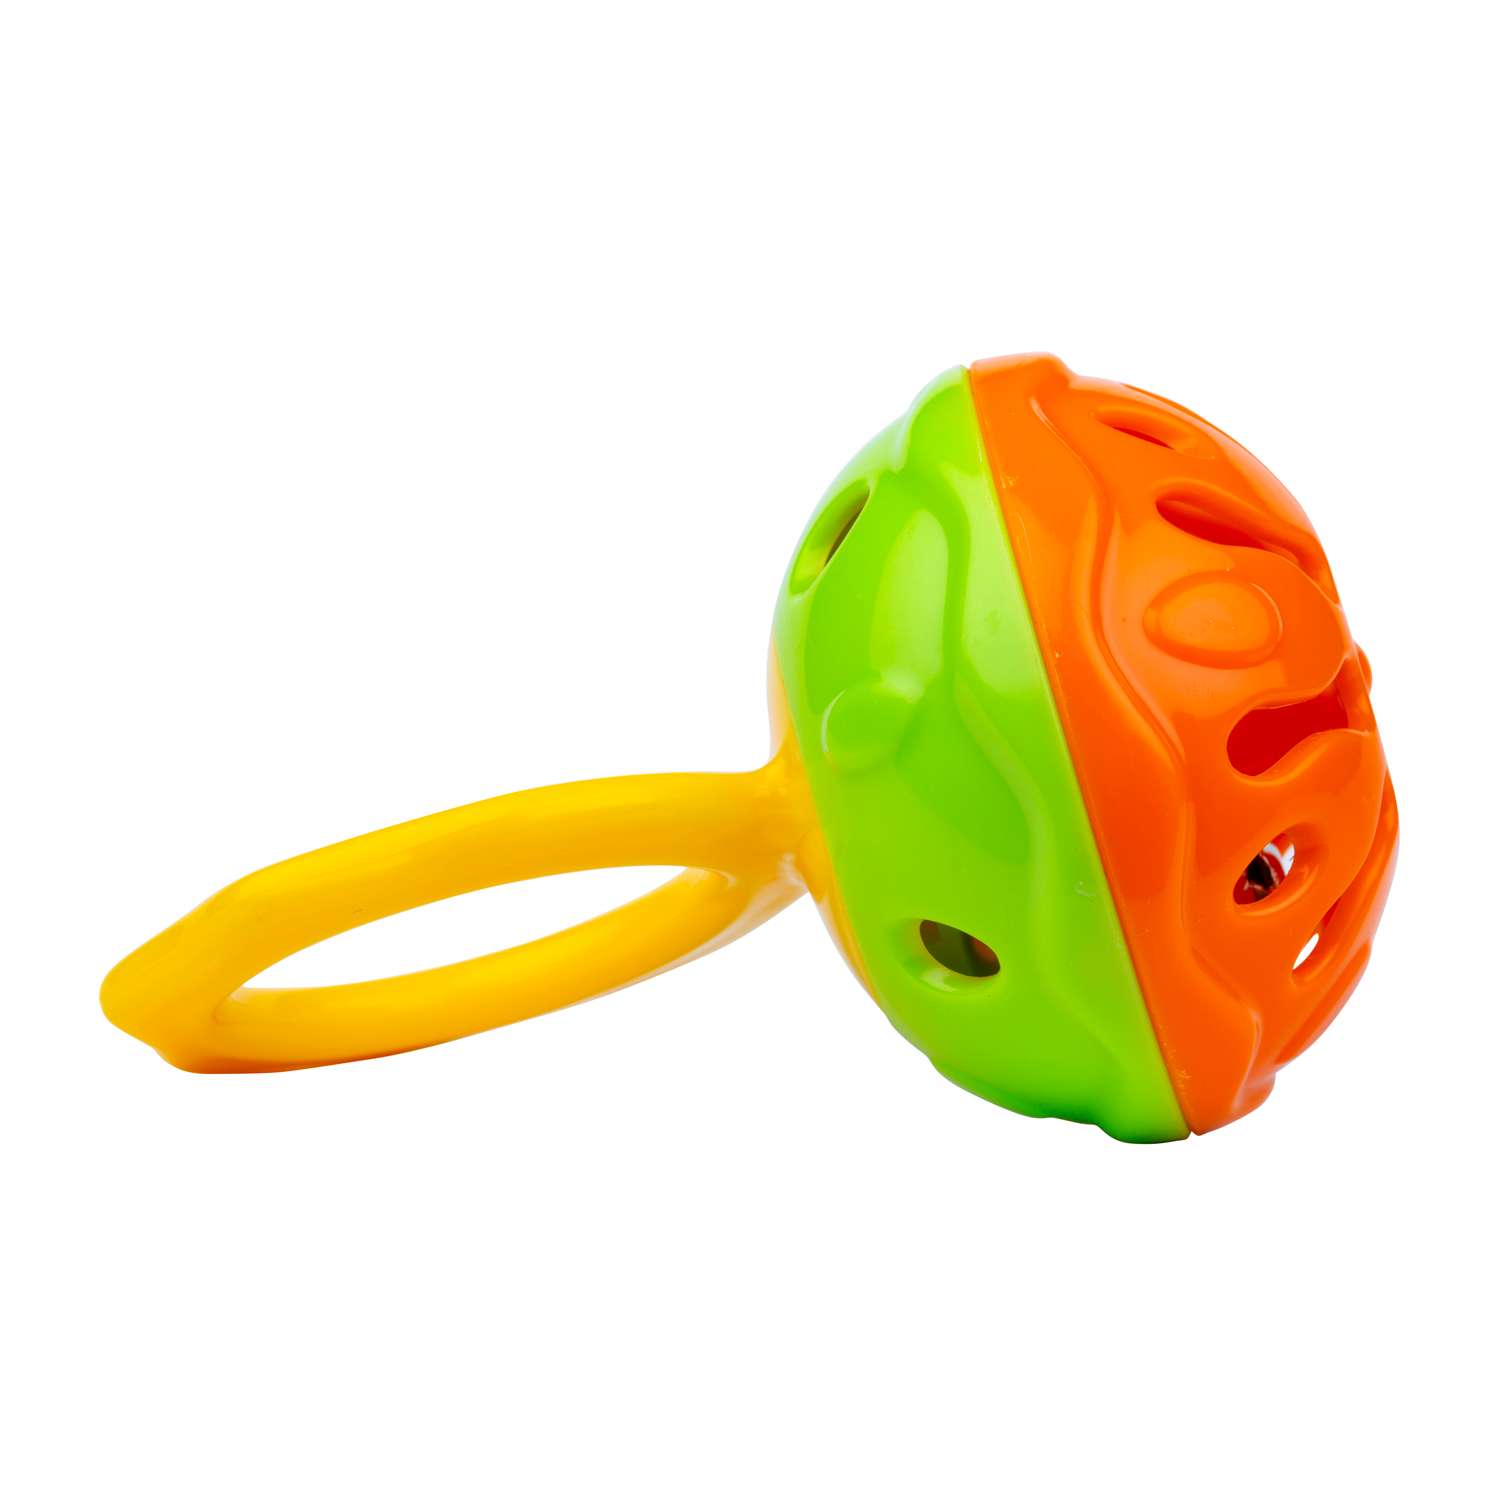 Погремушка Halilit пластмассовая с ручкой Мини-колокольчик оранжево-зеленый - фото 2